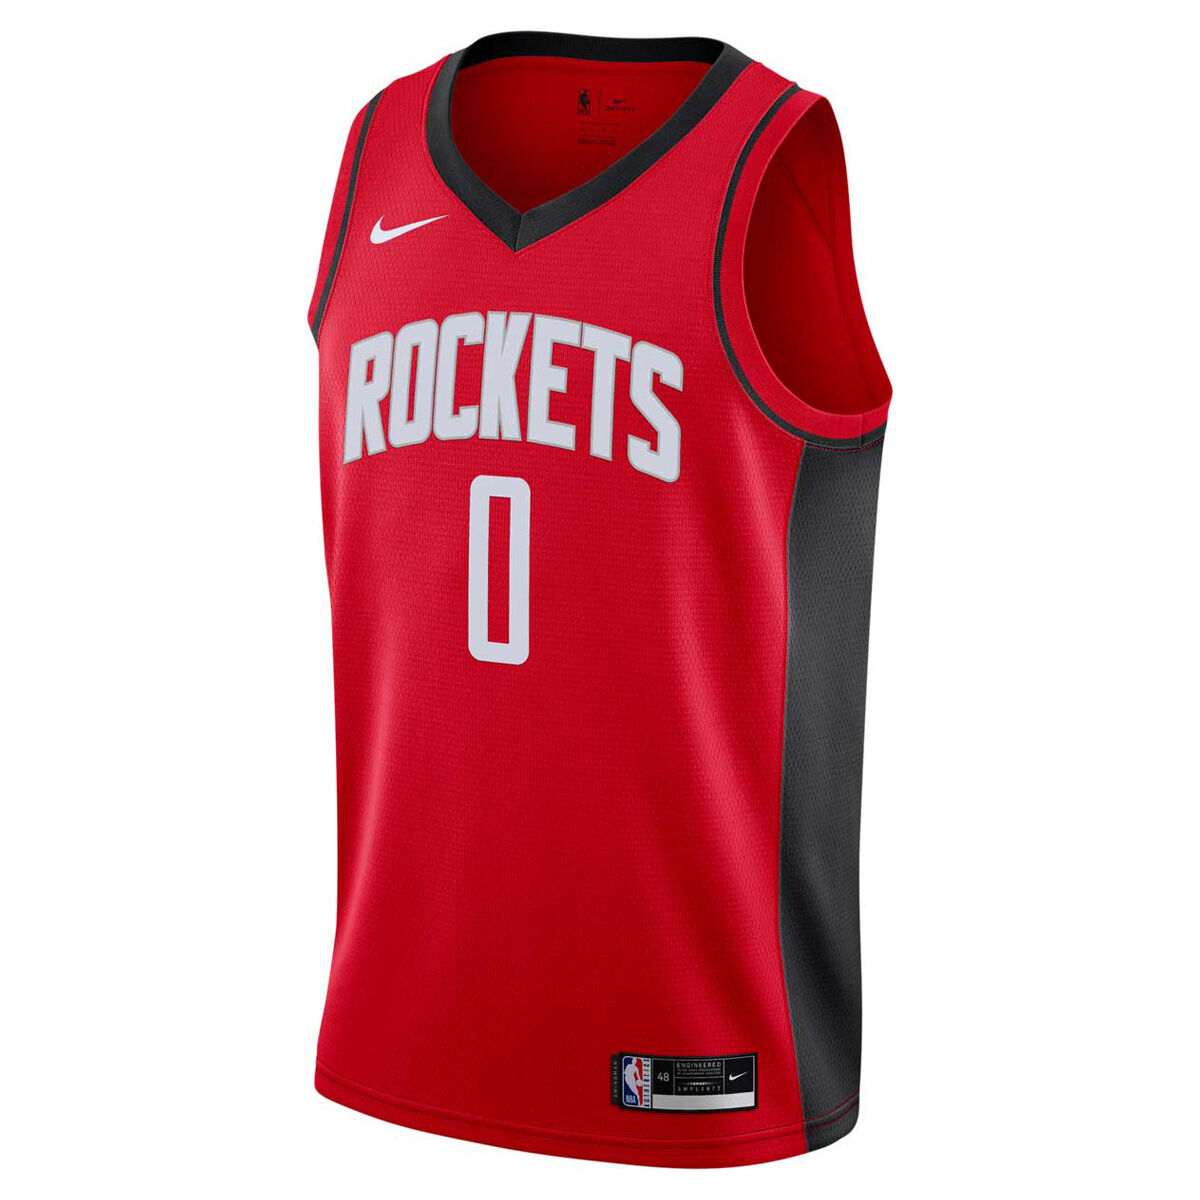 Basketball - NBA Merchandise - rebel